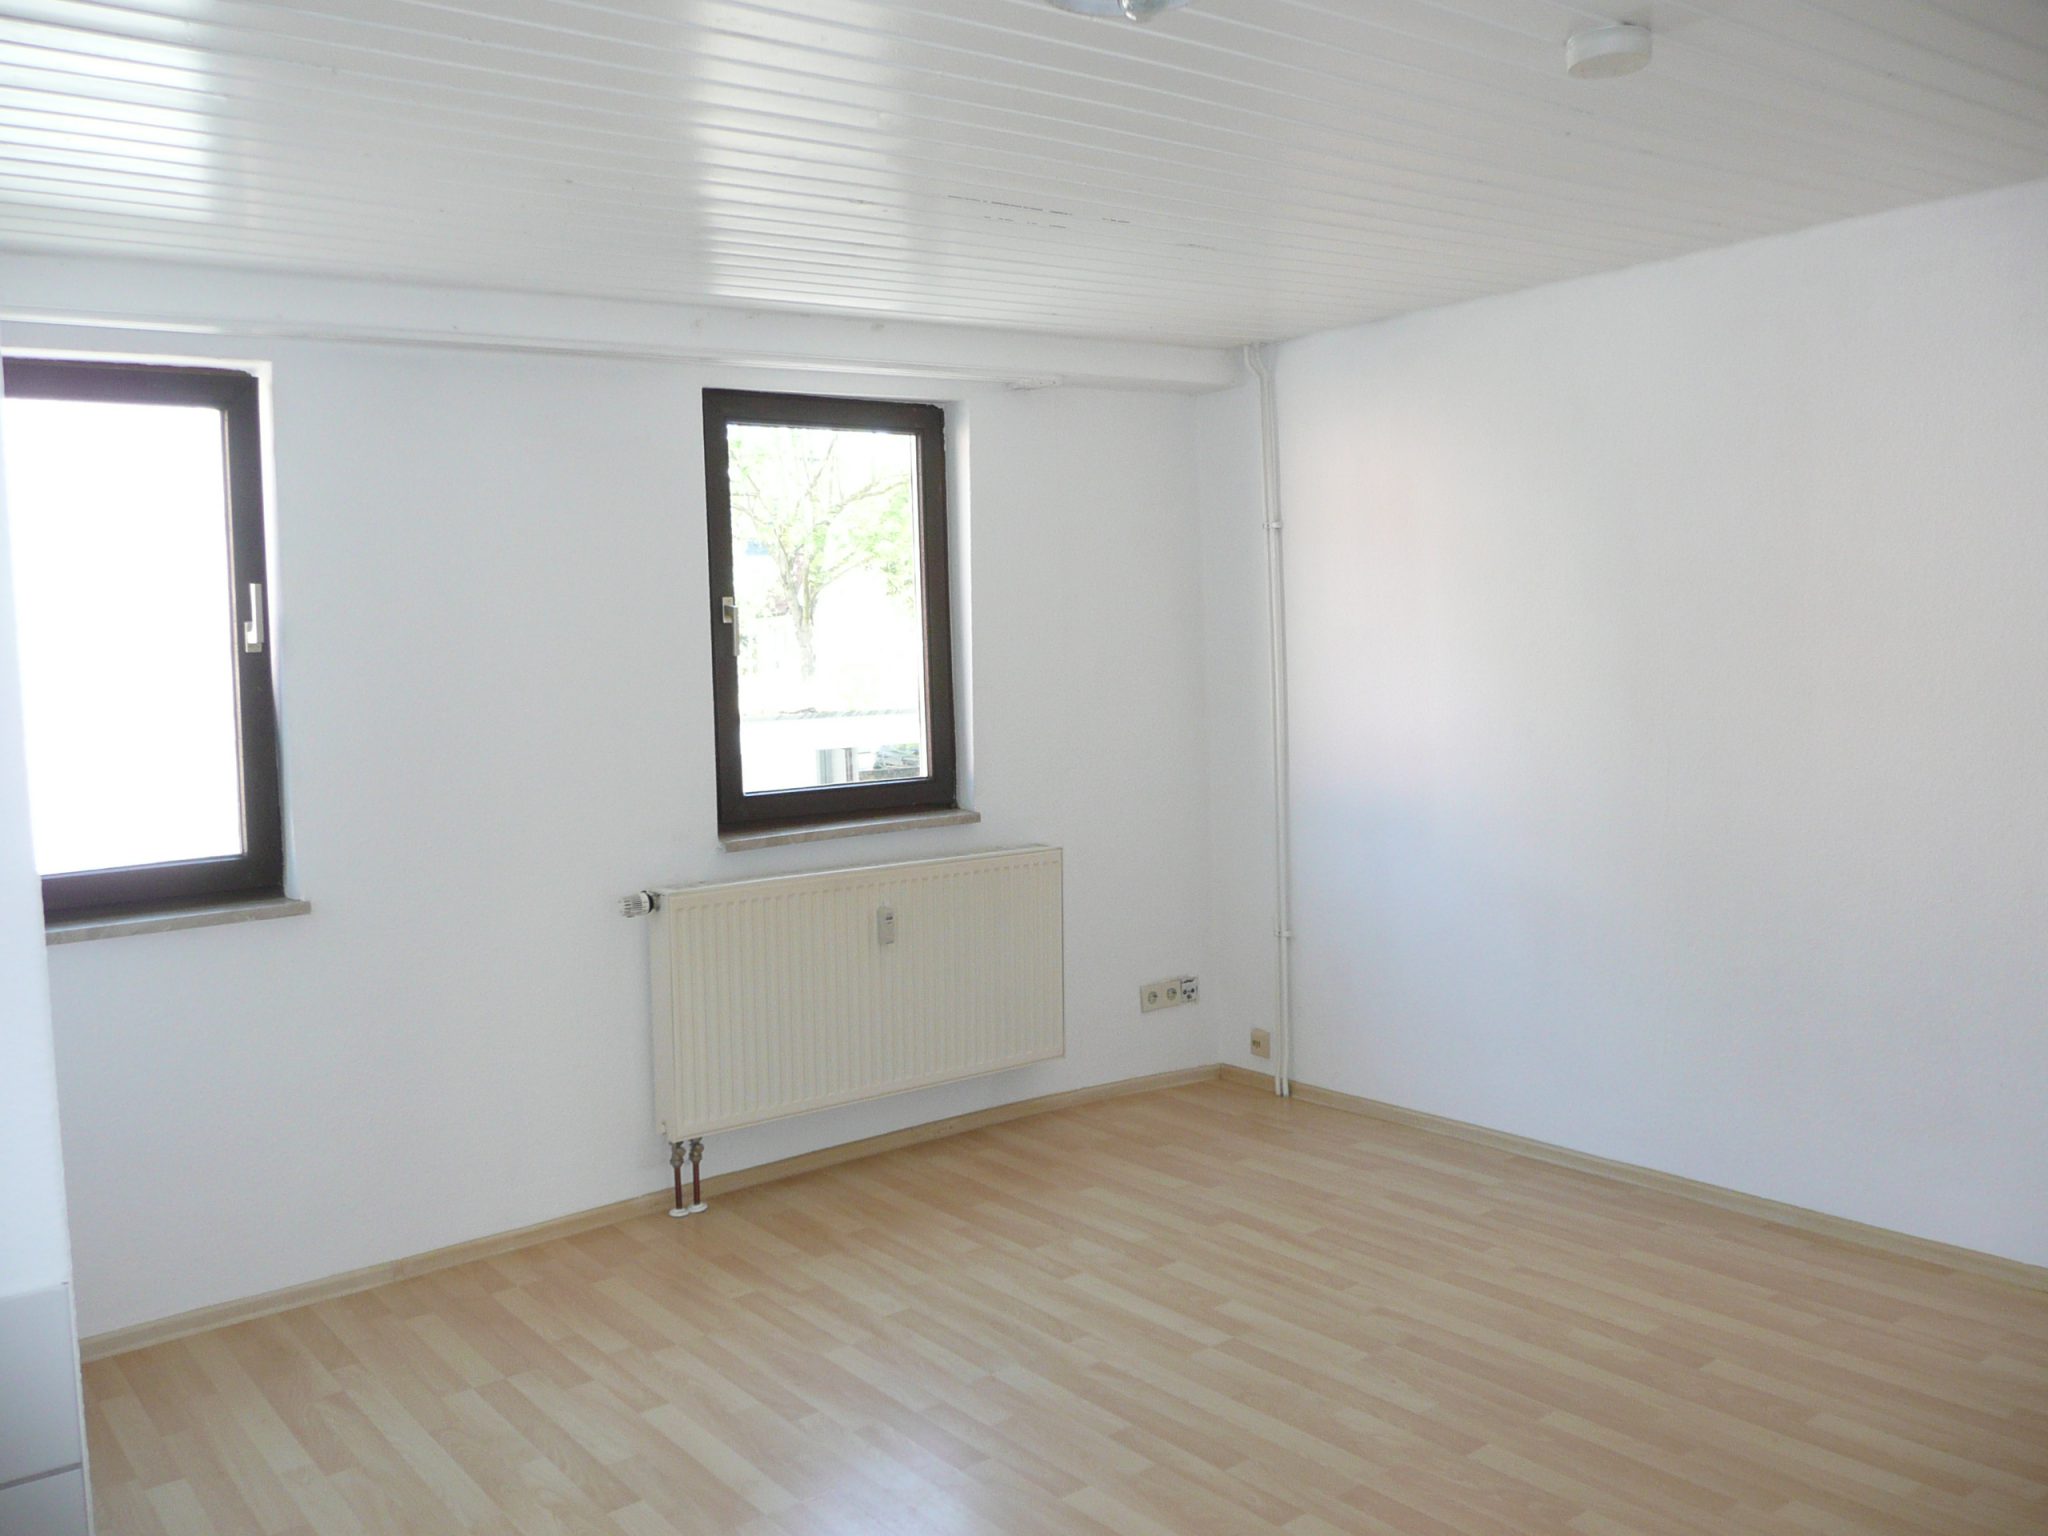 Günstige 2-Zimmer-Wohnung – Immobilien Simanok ...